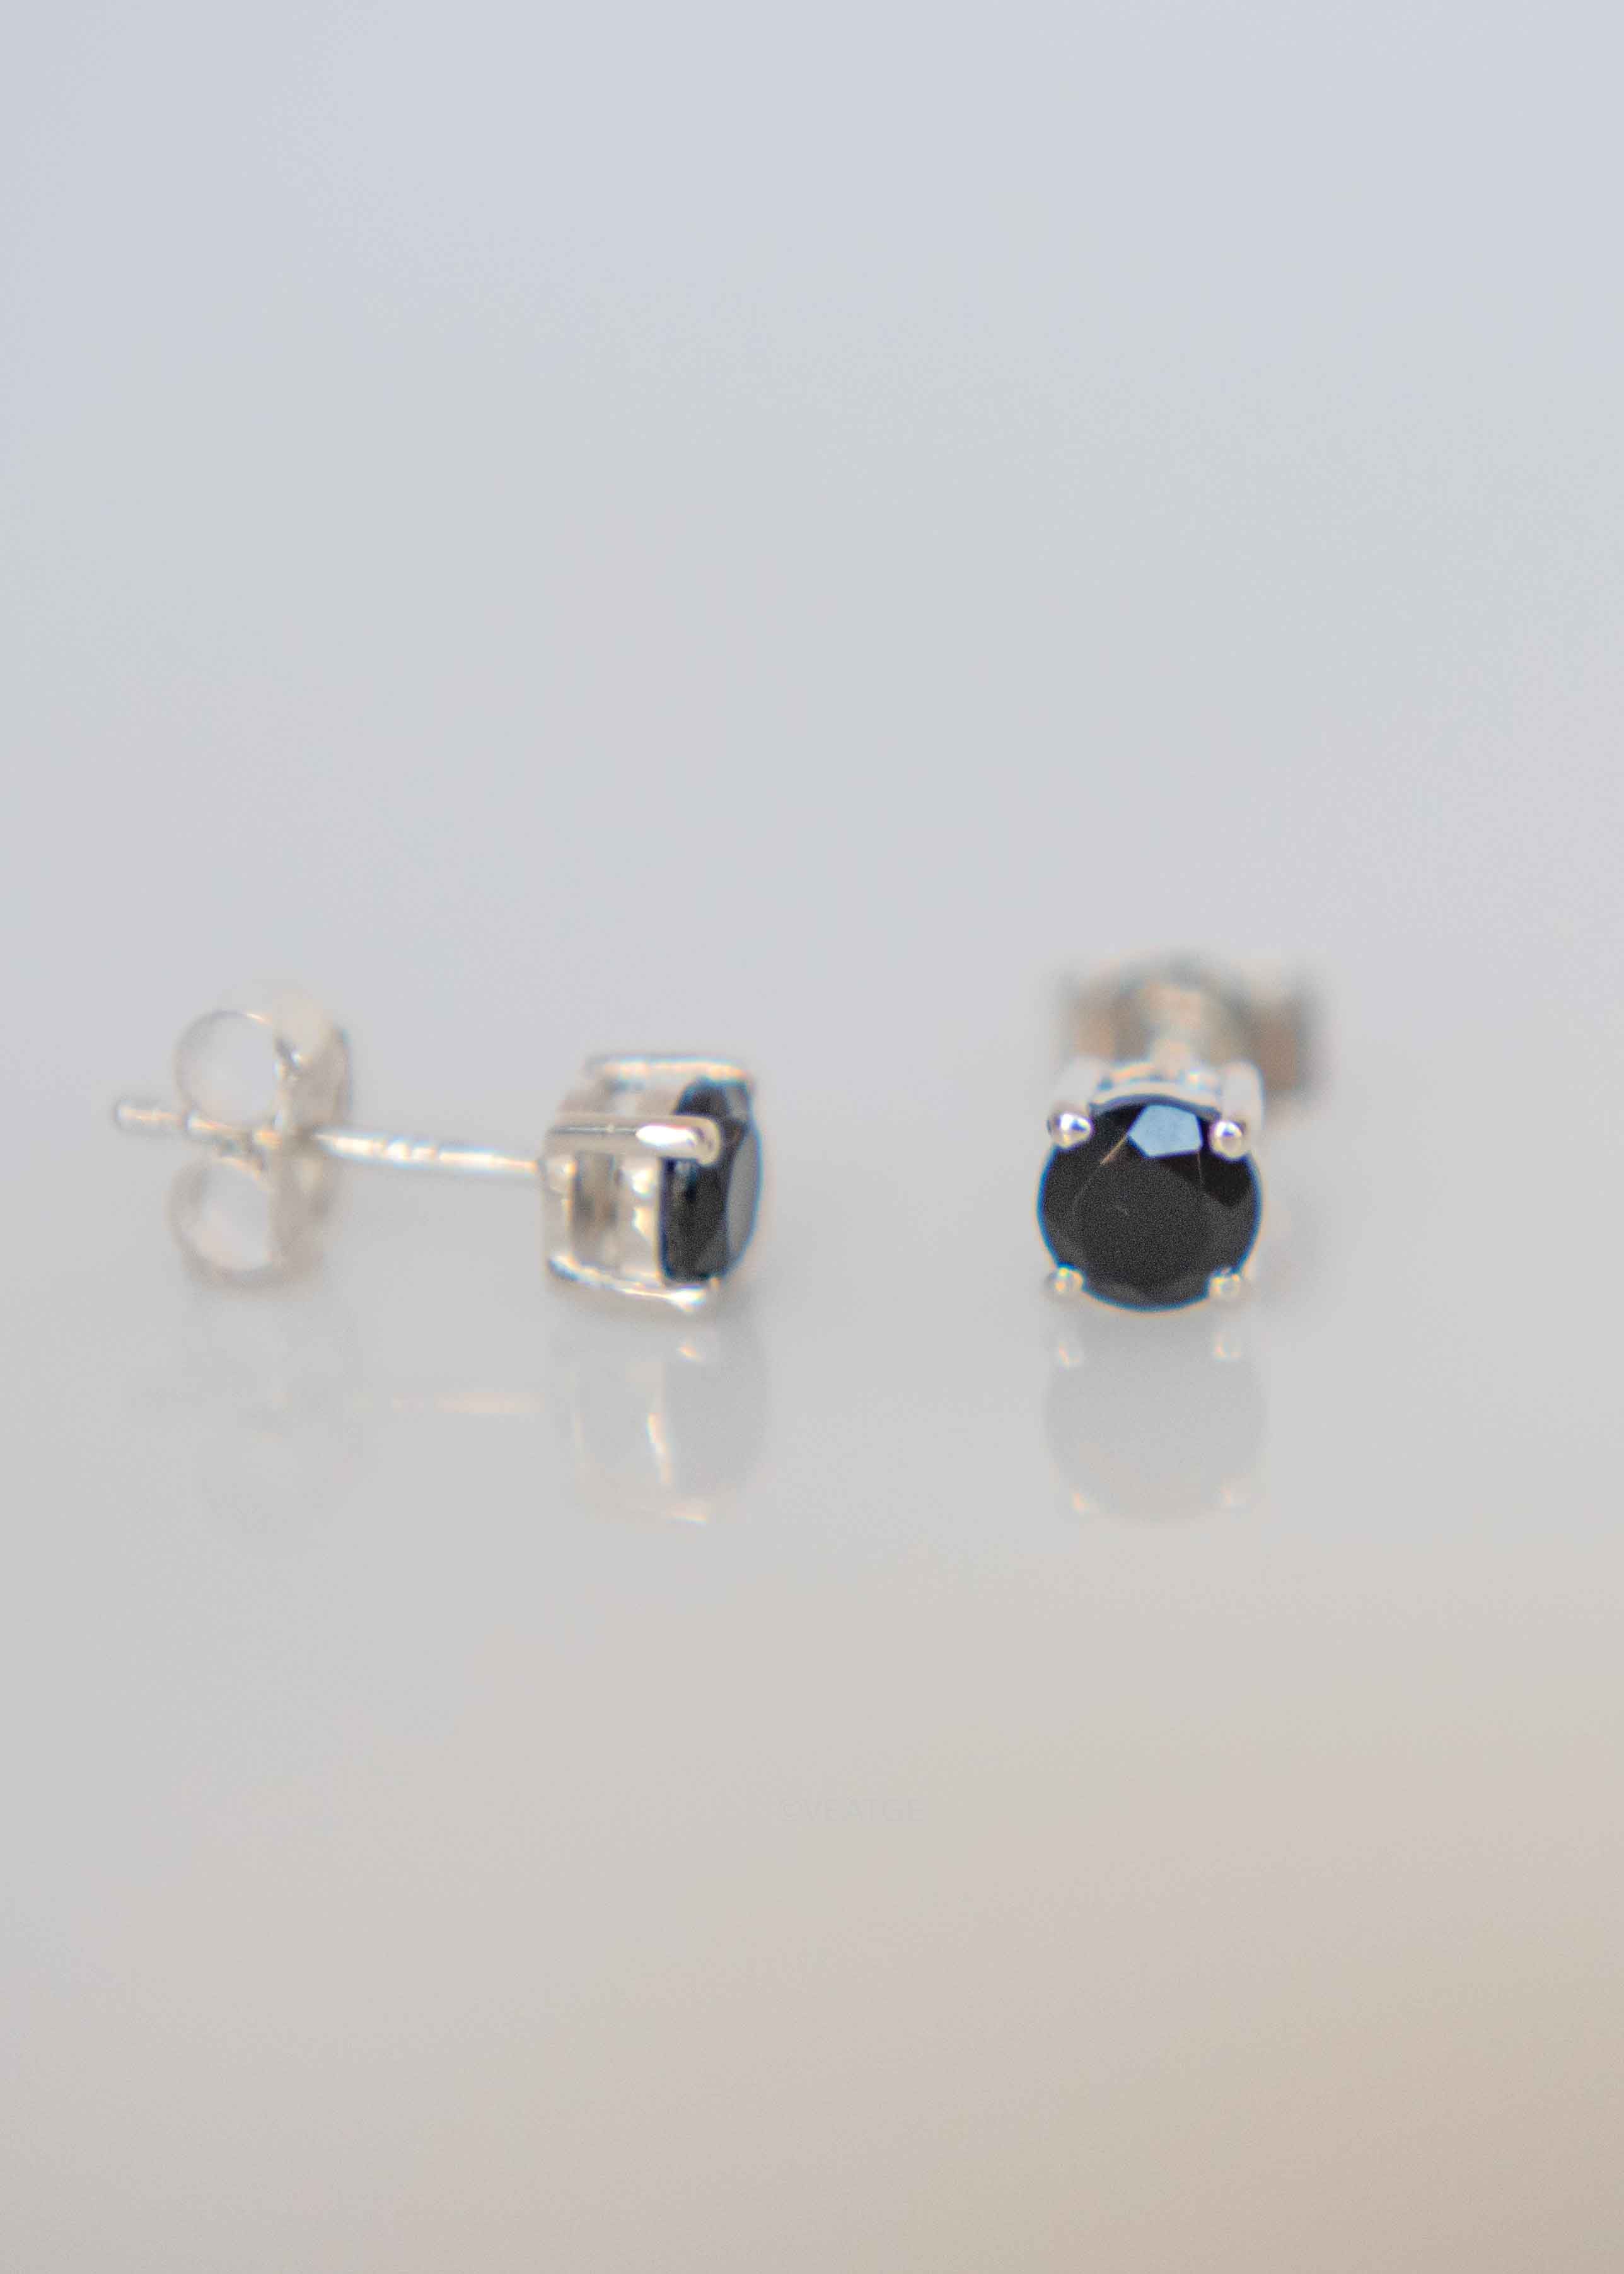 black onyx silver cartilage second piercing studs earrings Gift for teen girls girlfriend best friend